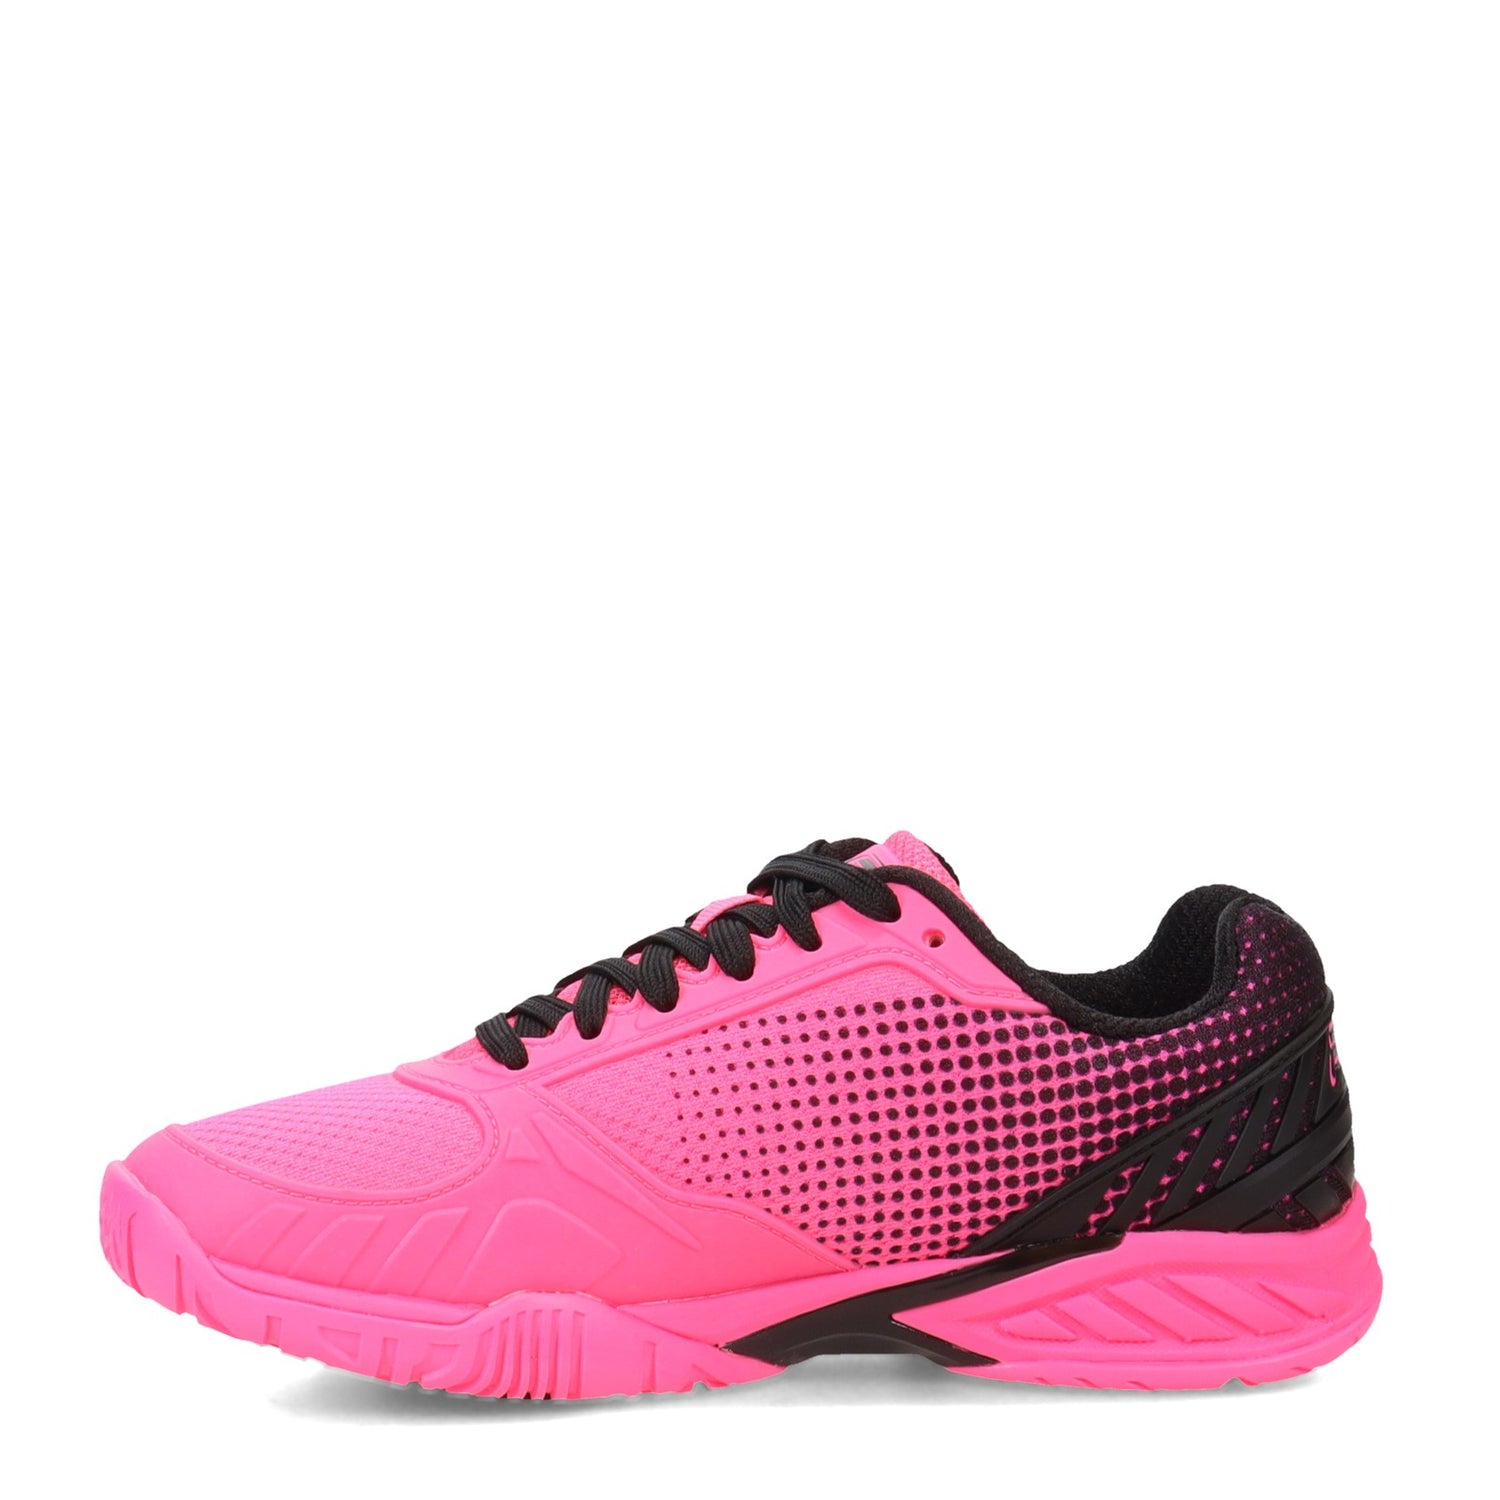 Peltz Shoes  Women's Fila Volley Zone Pickleball Shoe KOPK/BLK/KOPK 5PM00599-660